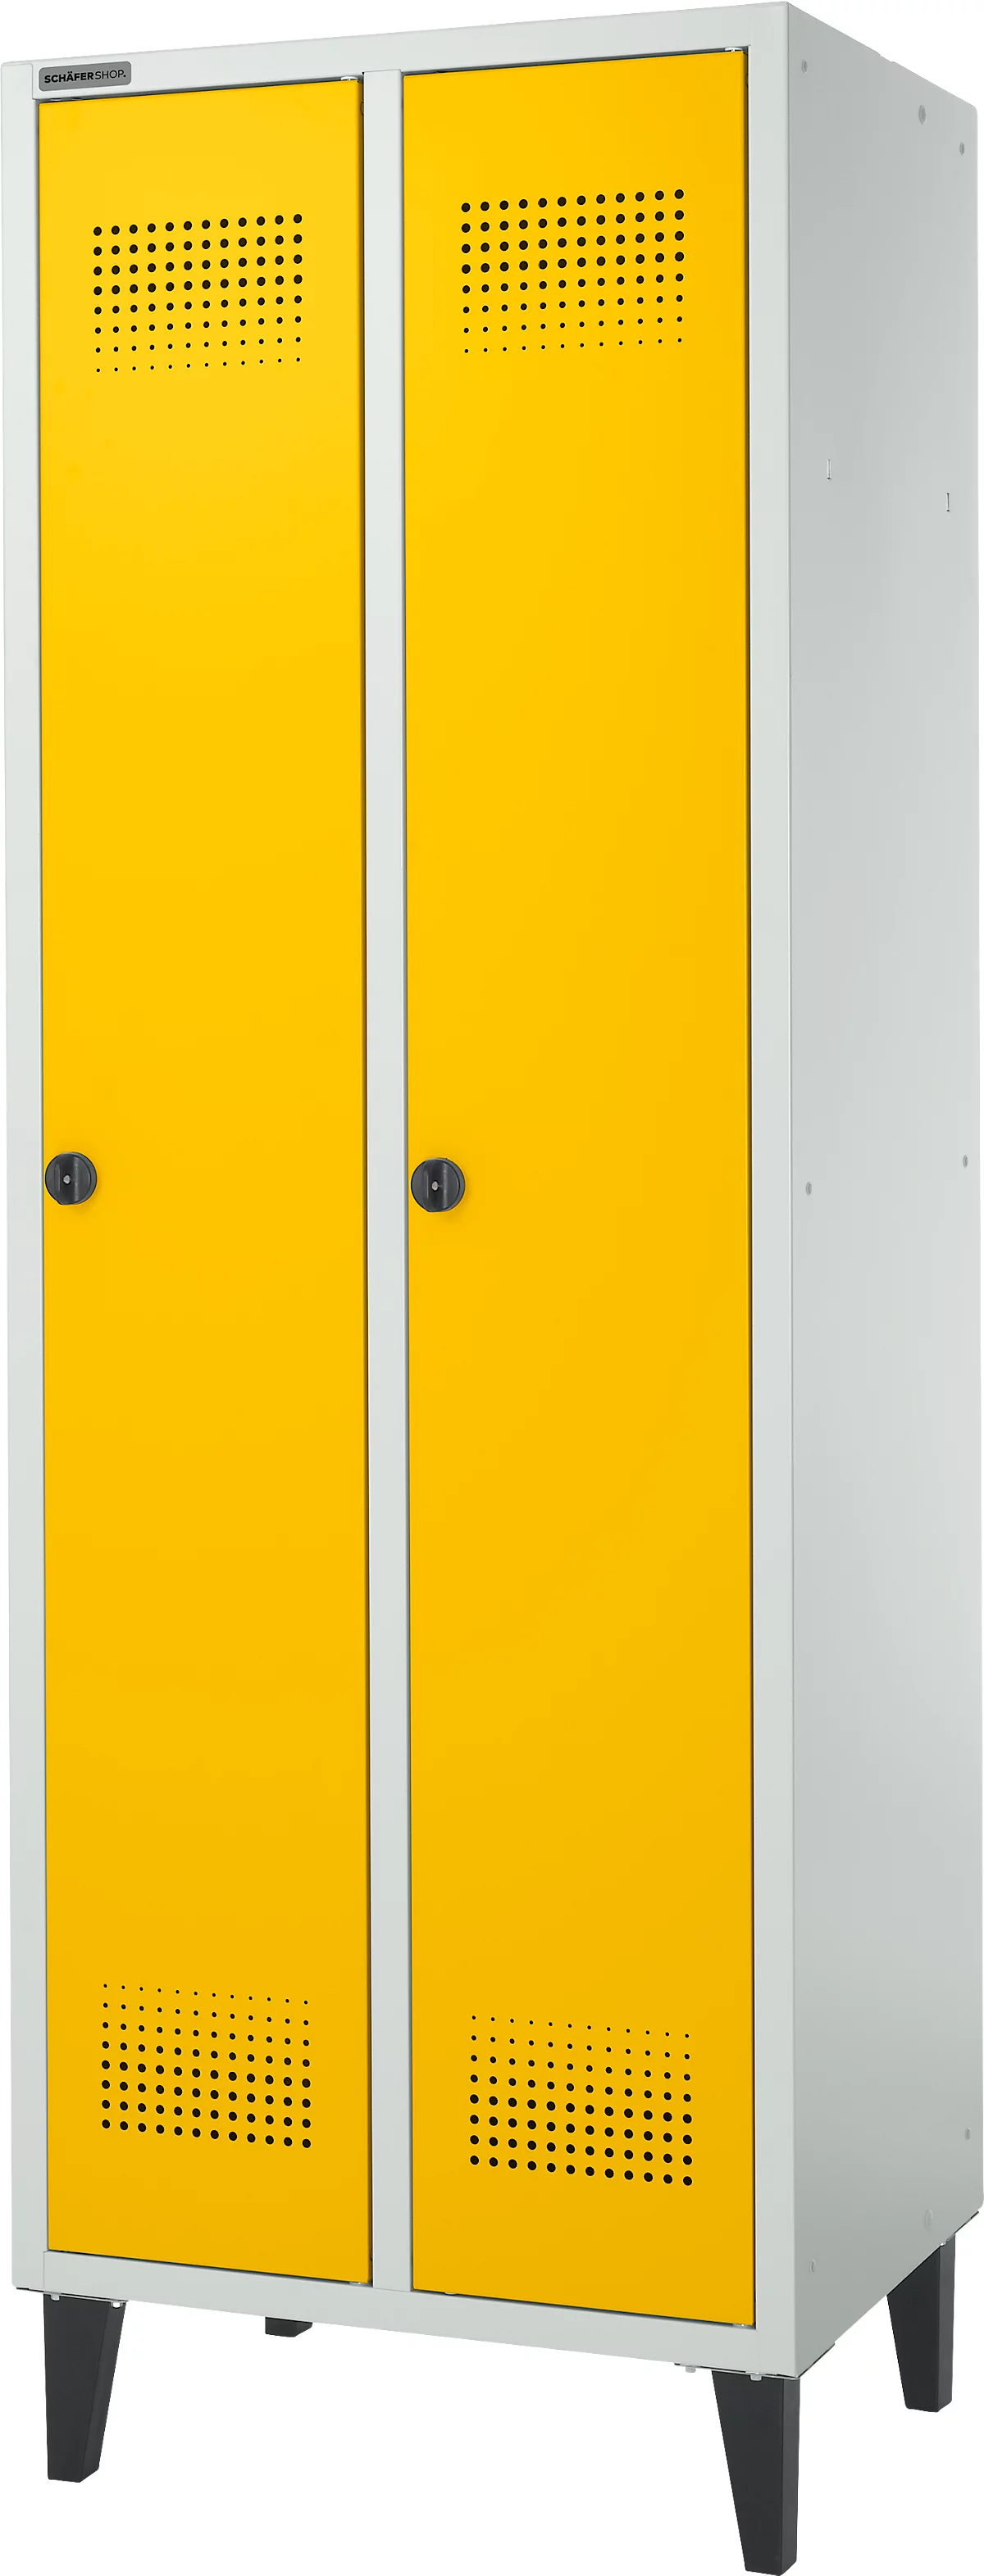 Schäfer Shop Genius Armario vestidor, 2 compartimentos, ancho 630 x fondo 500 x alto 1850 mm, cierre de leva, gris claro/amarillo